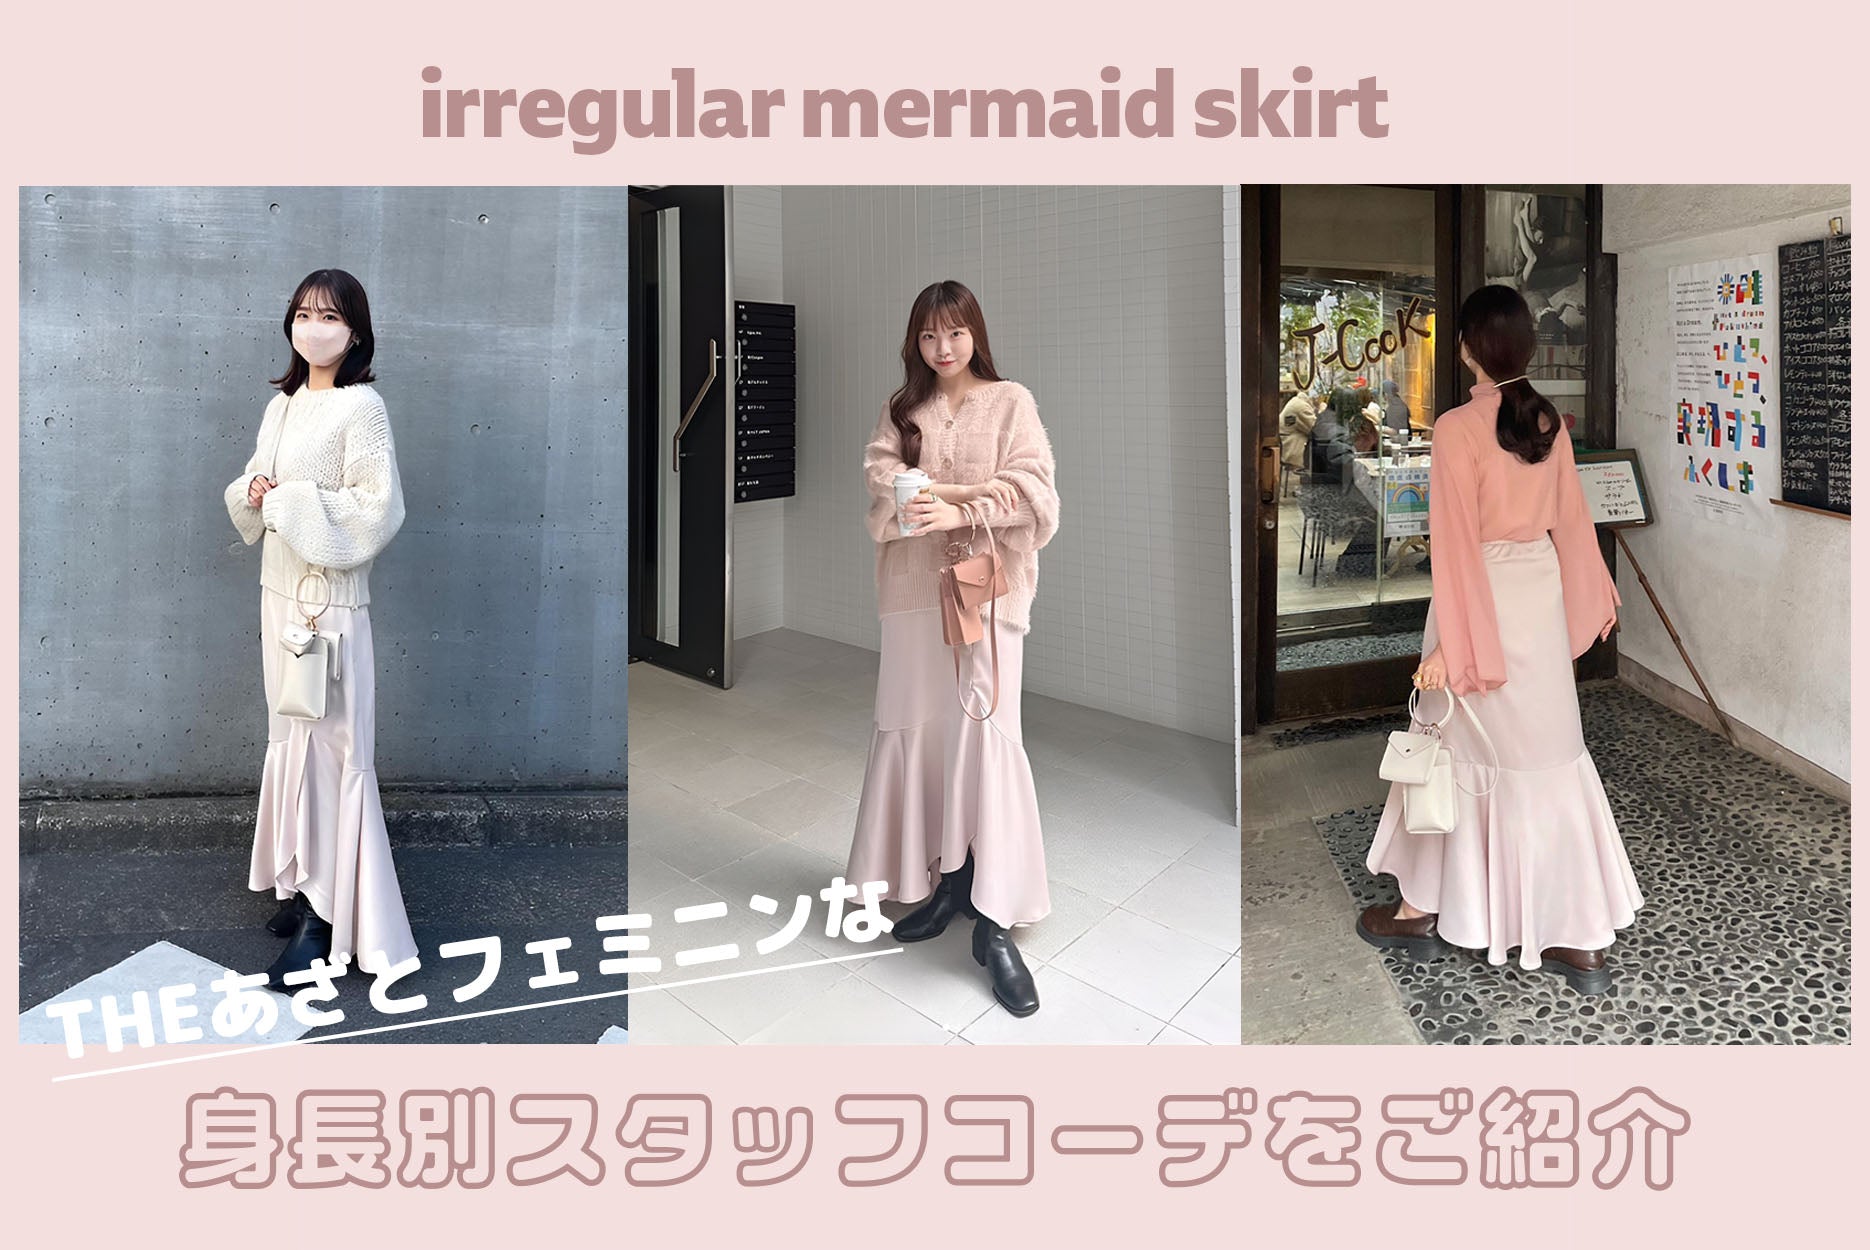 muguet irregular mermaid skirt pinkbeige